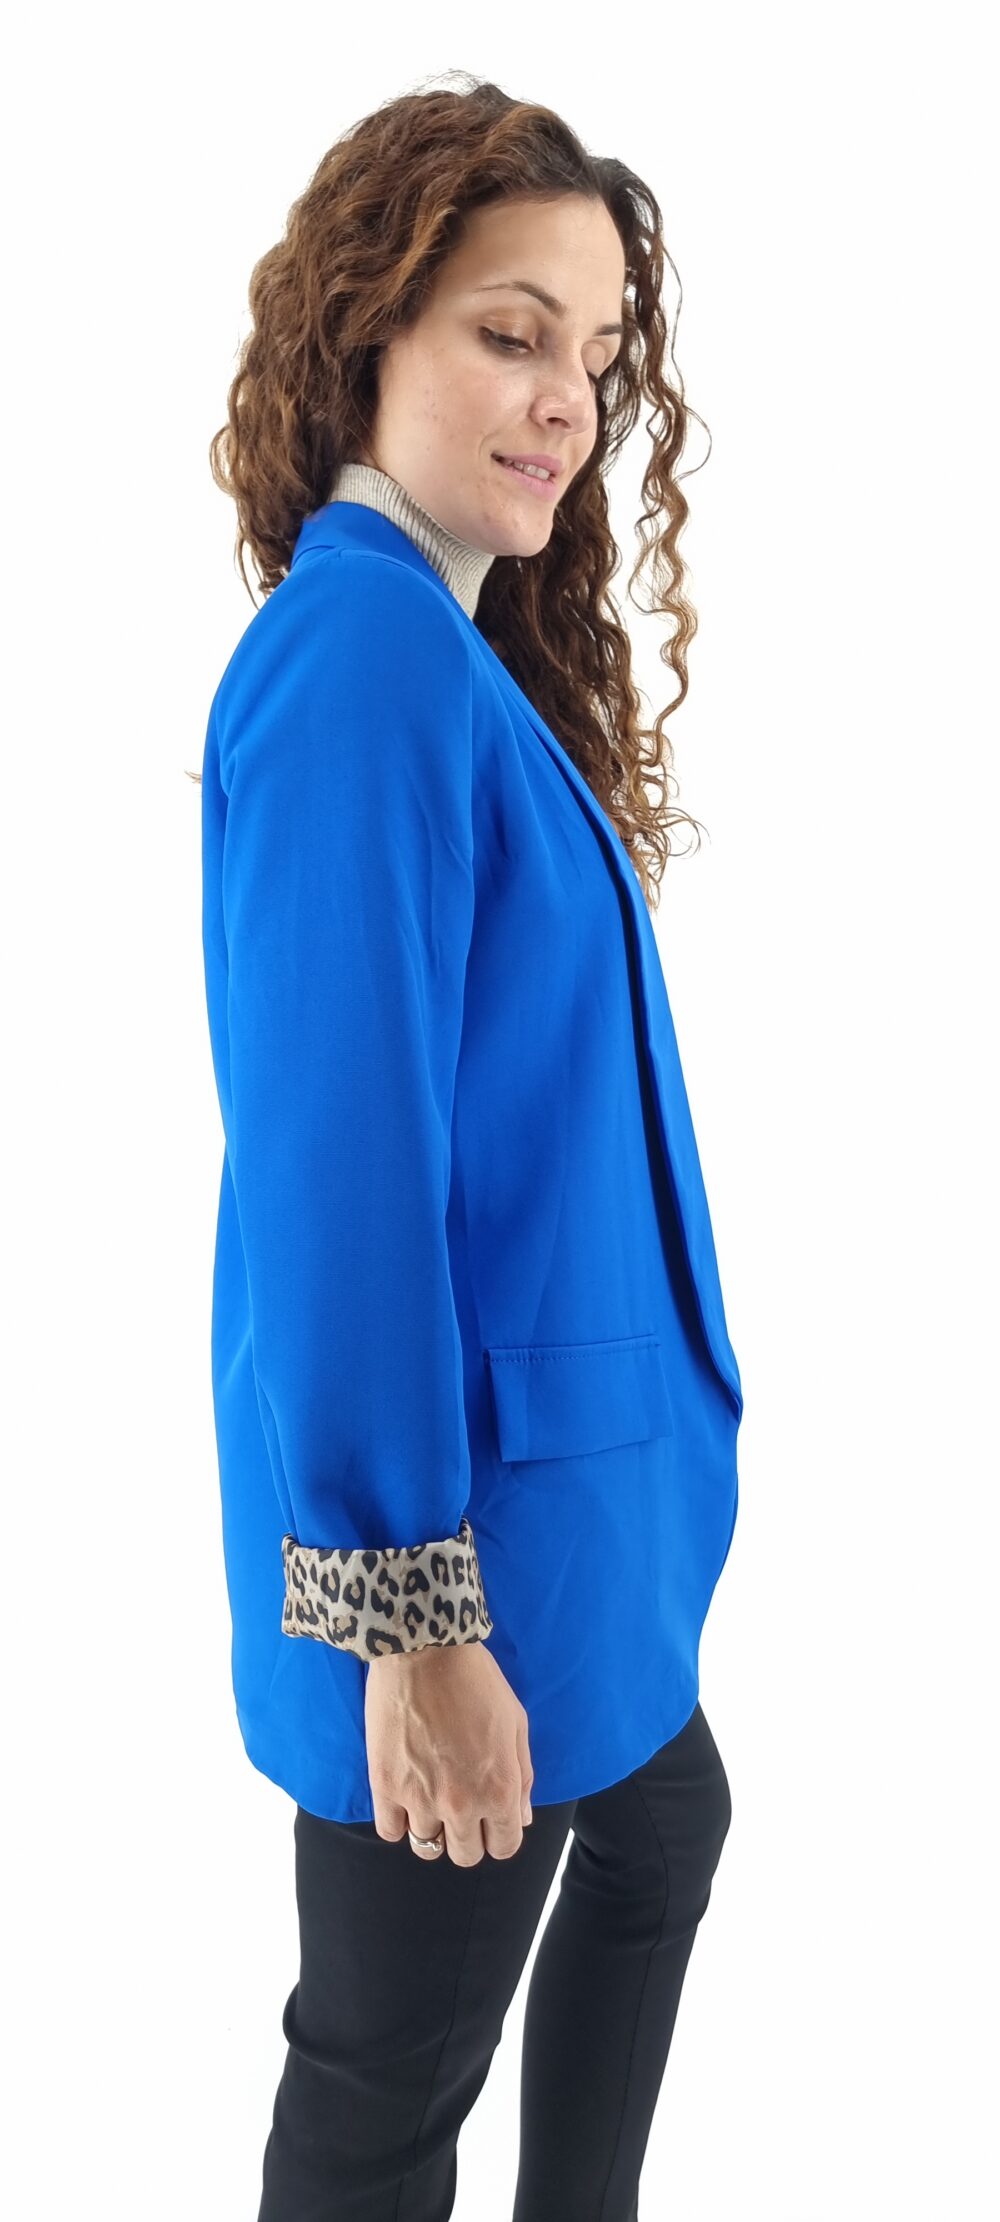 Σακάκι με εσωτερικό animal print μοτίβο μπλε ρουά